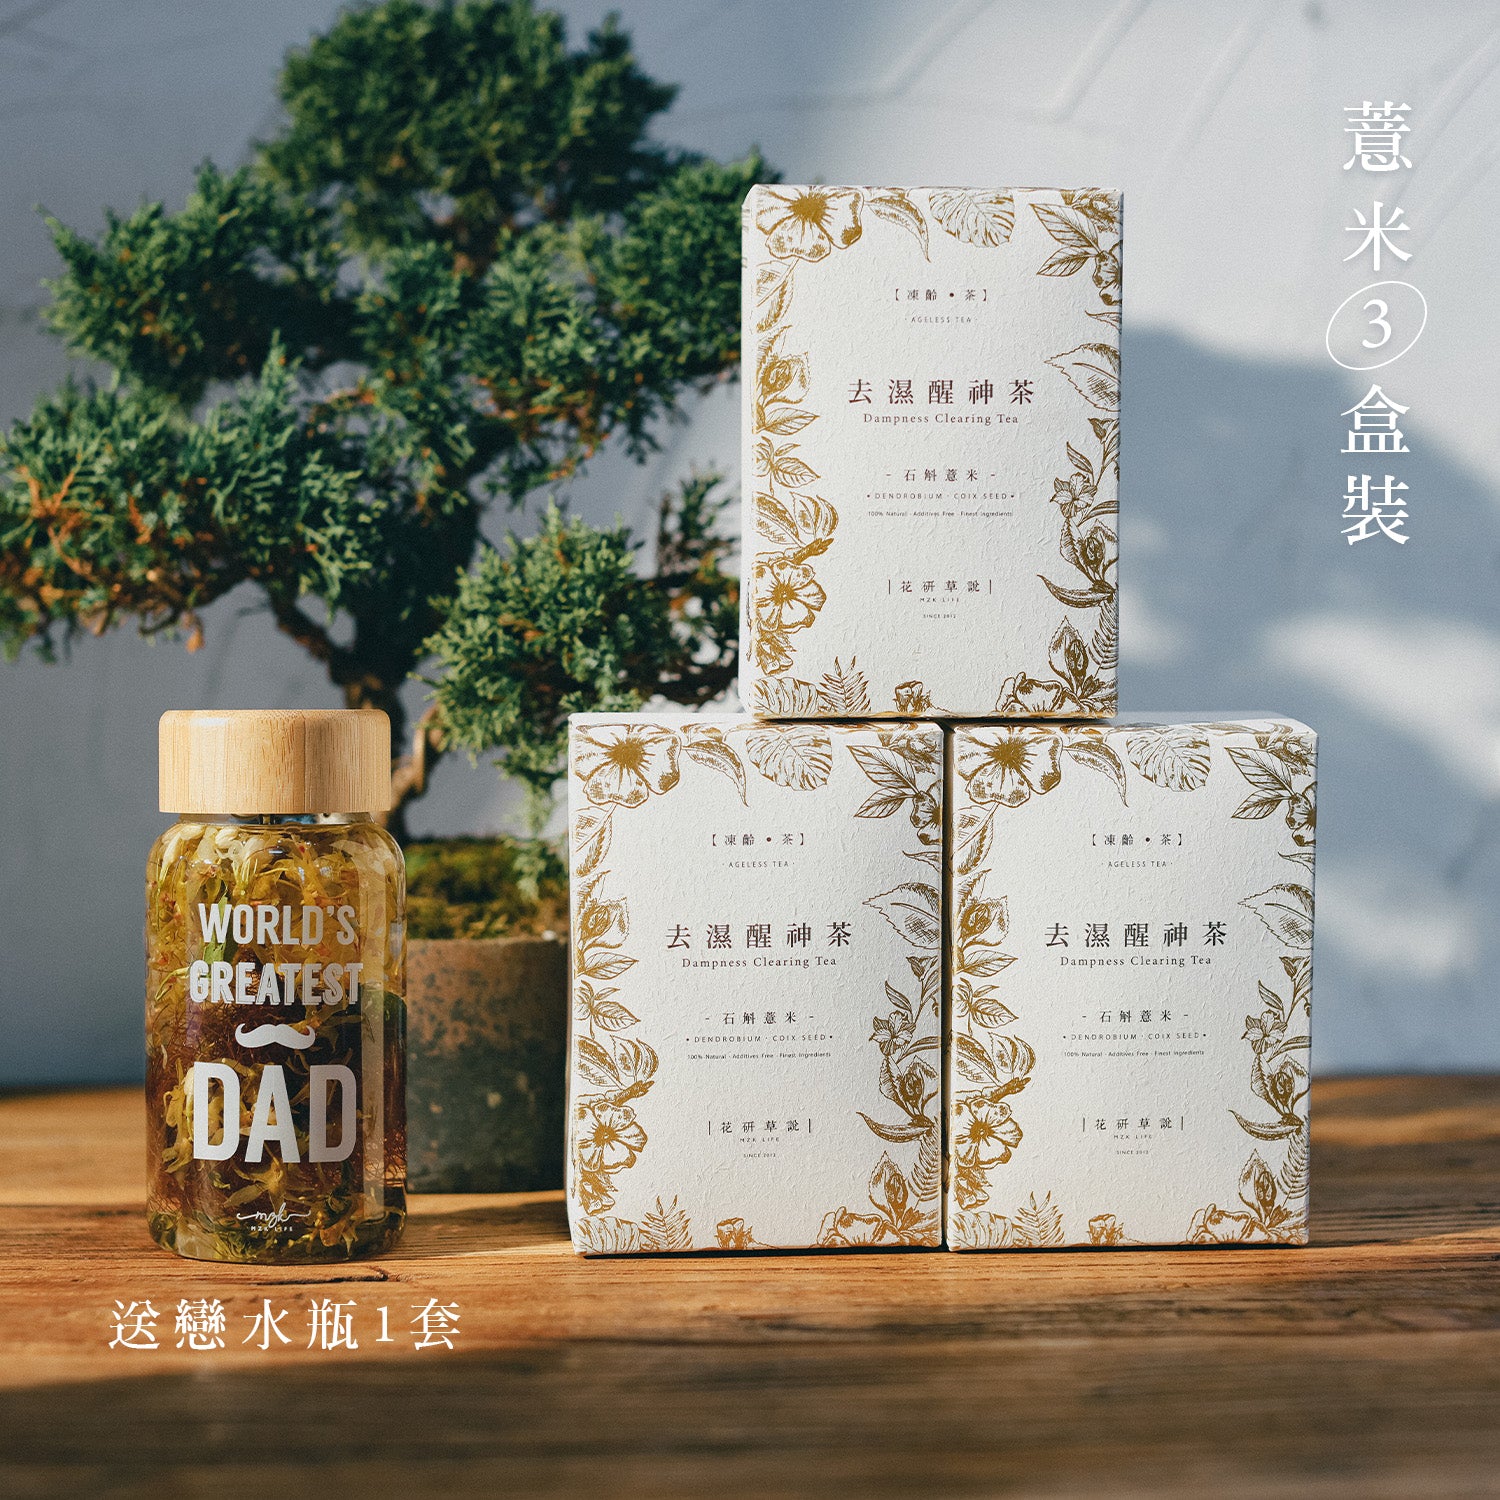 金 裝 石 斛 薏 米 花 茶